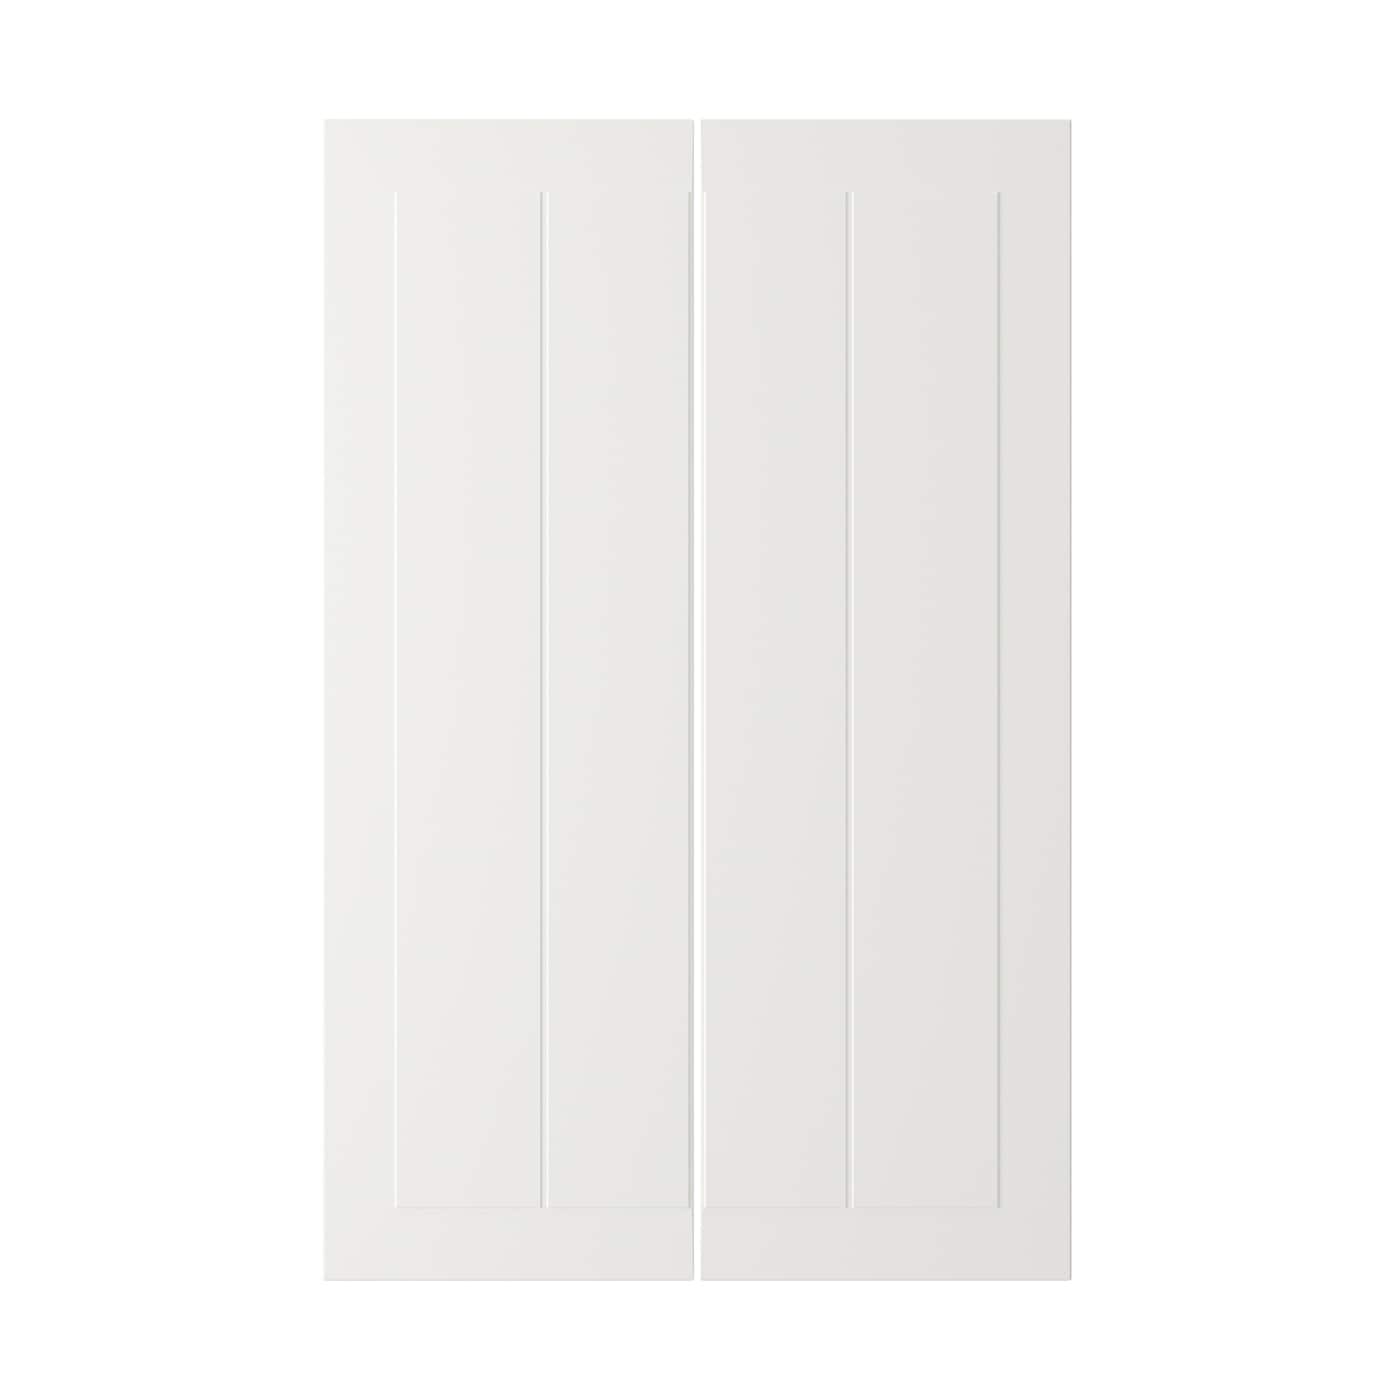 Дверца, 2 шт. - IKEA STENSUND, 25х80 см, белый, СТЕНСУНД ИКЕА